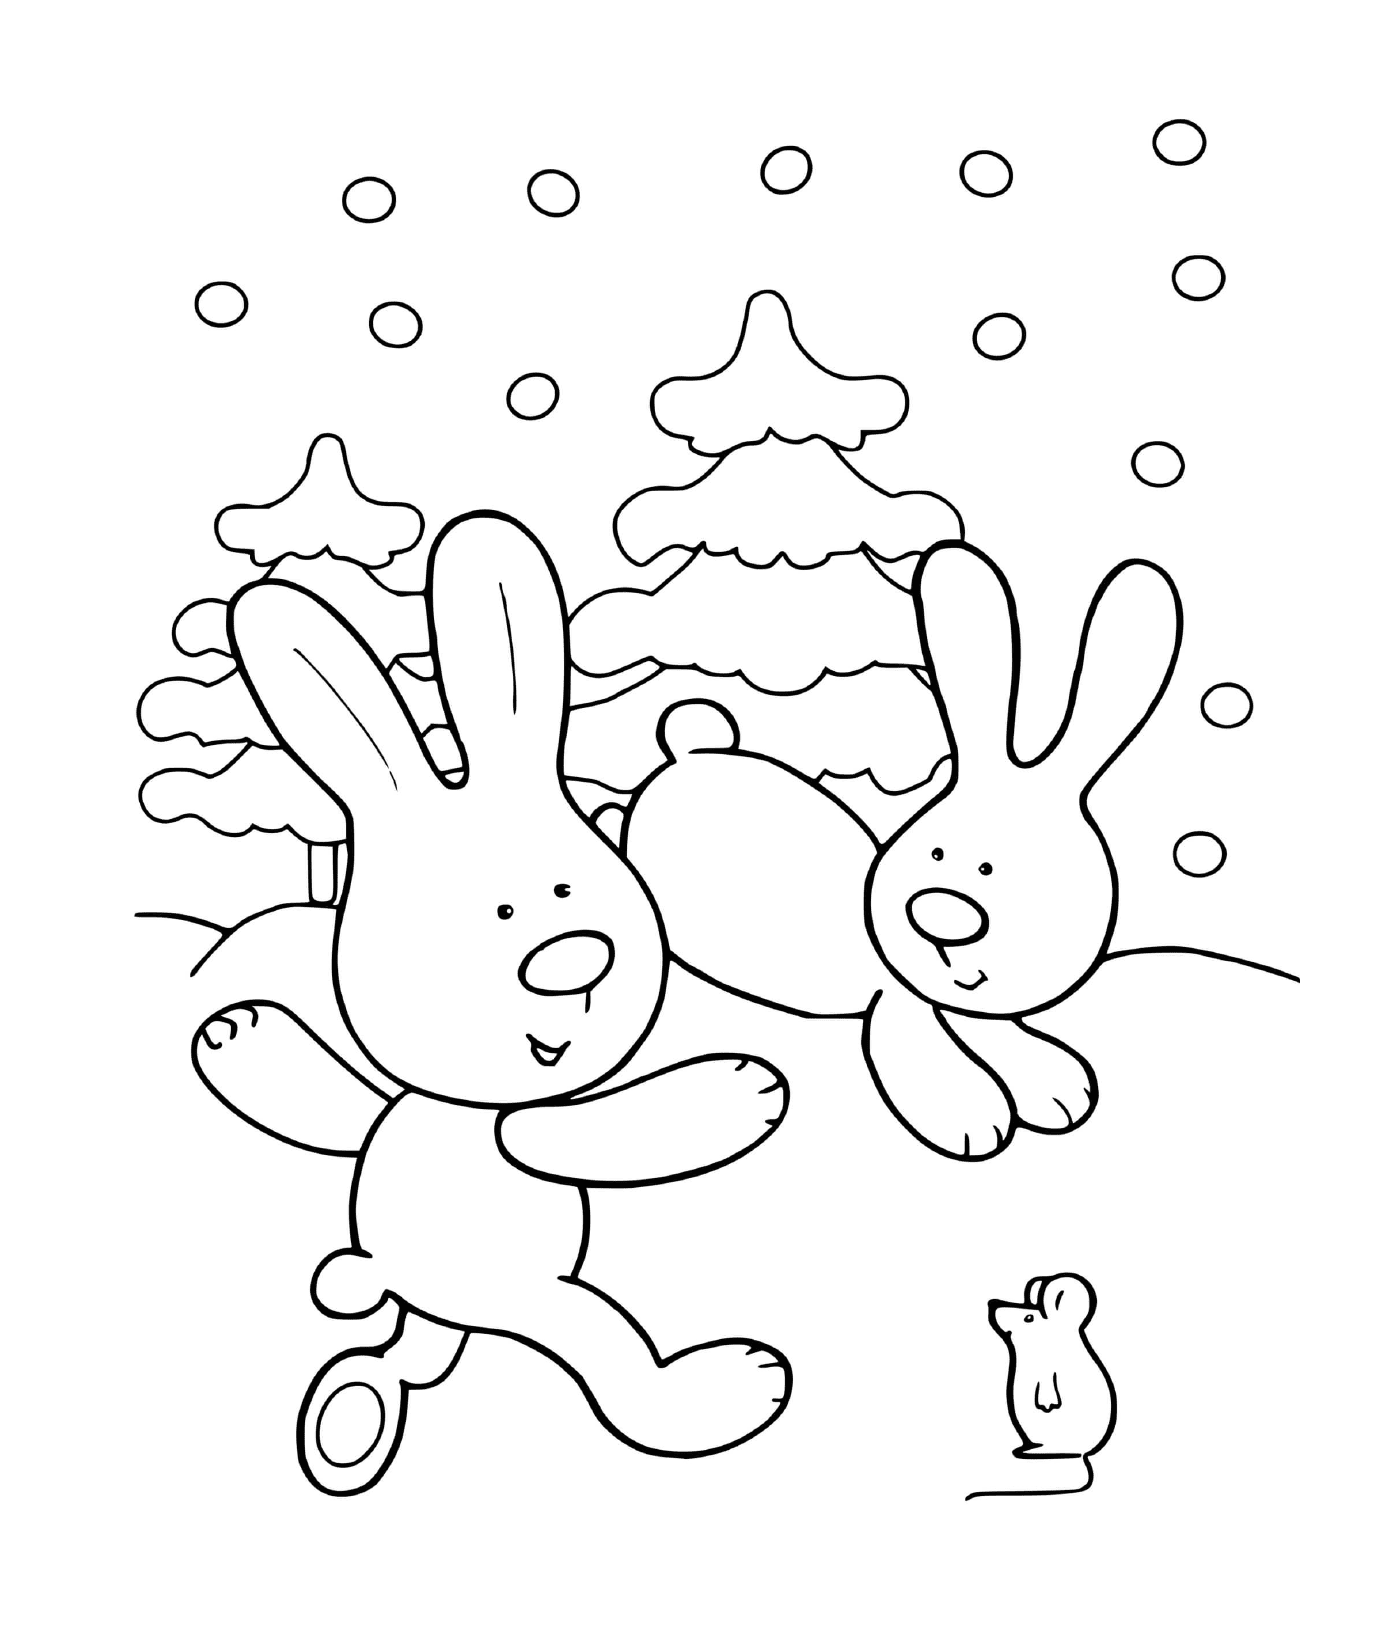  Hares rejoice in winter 